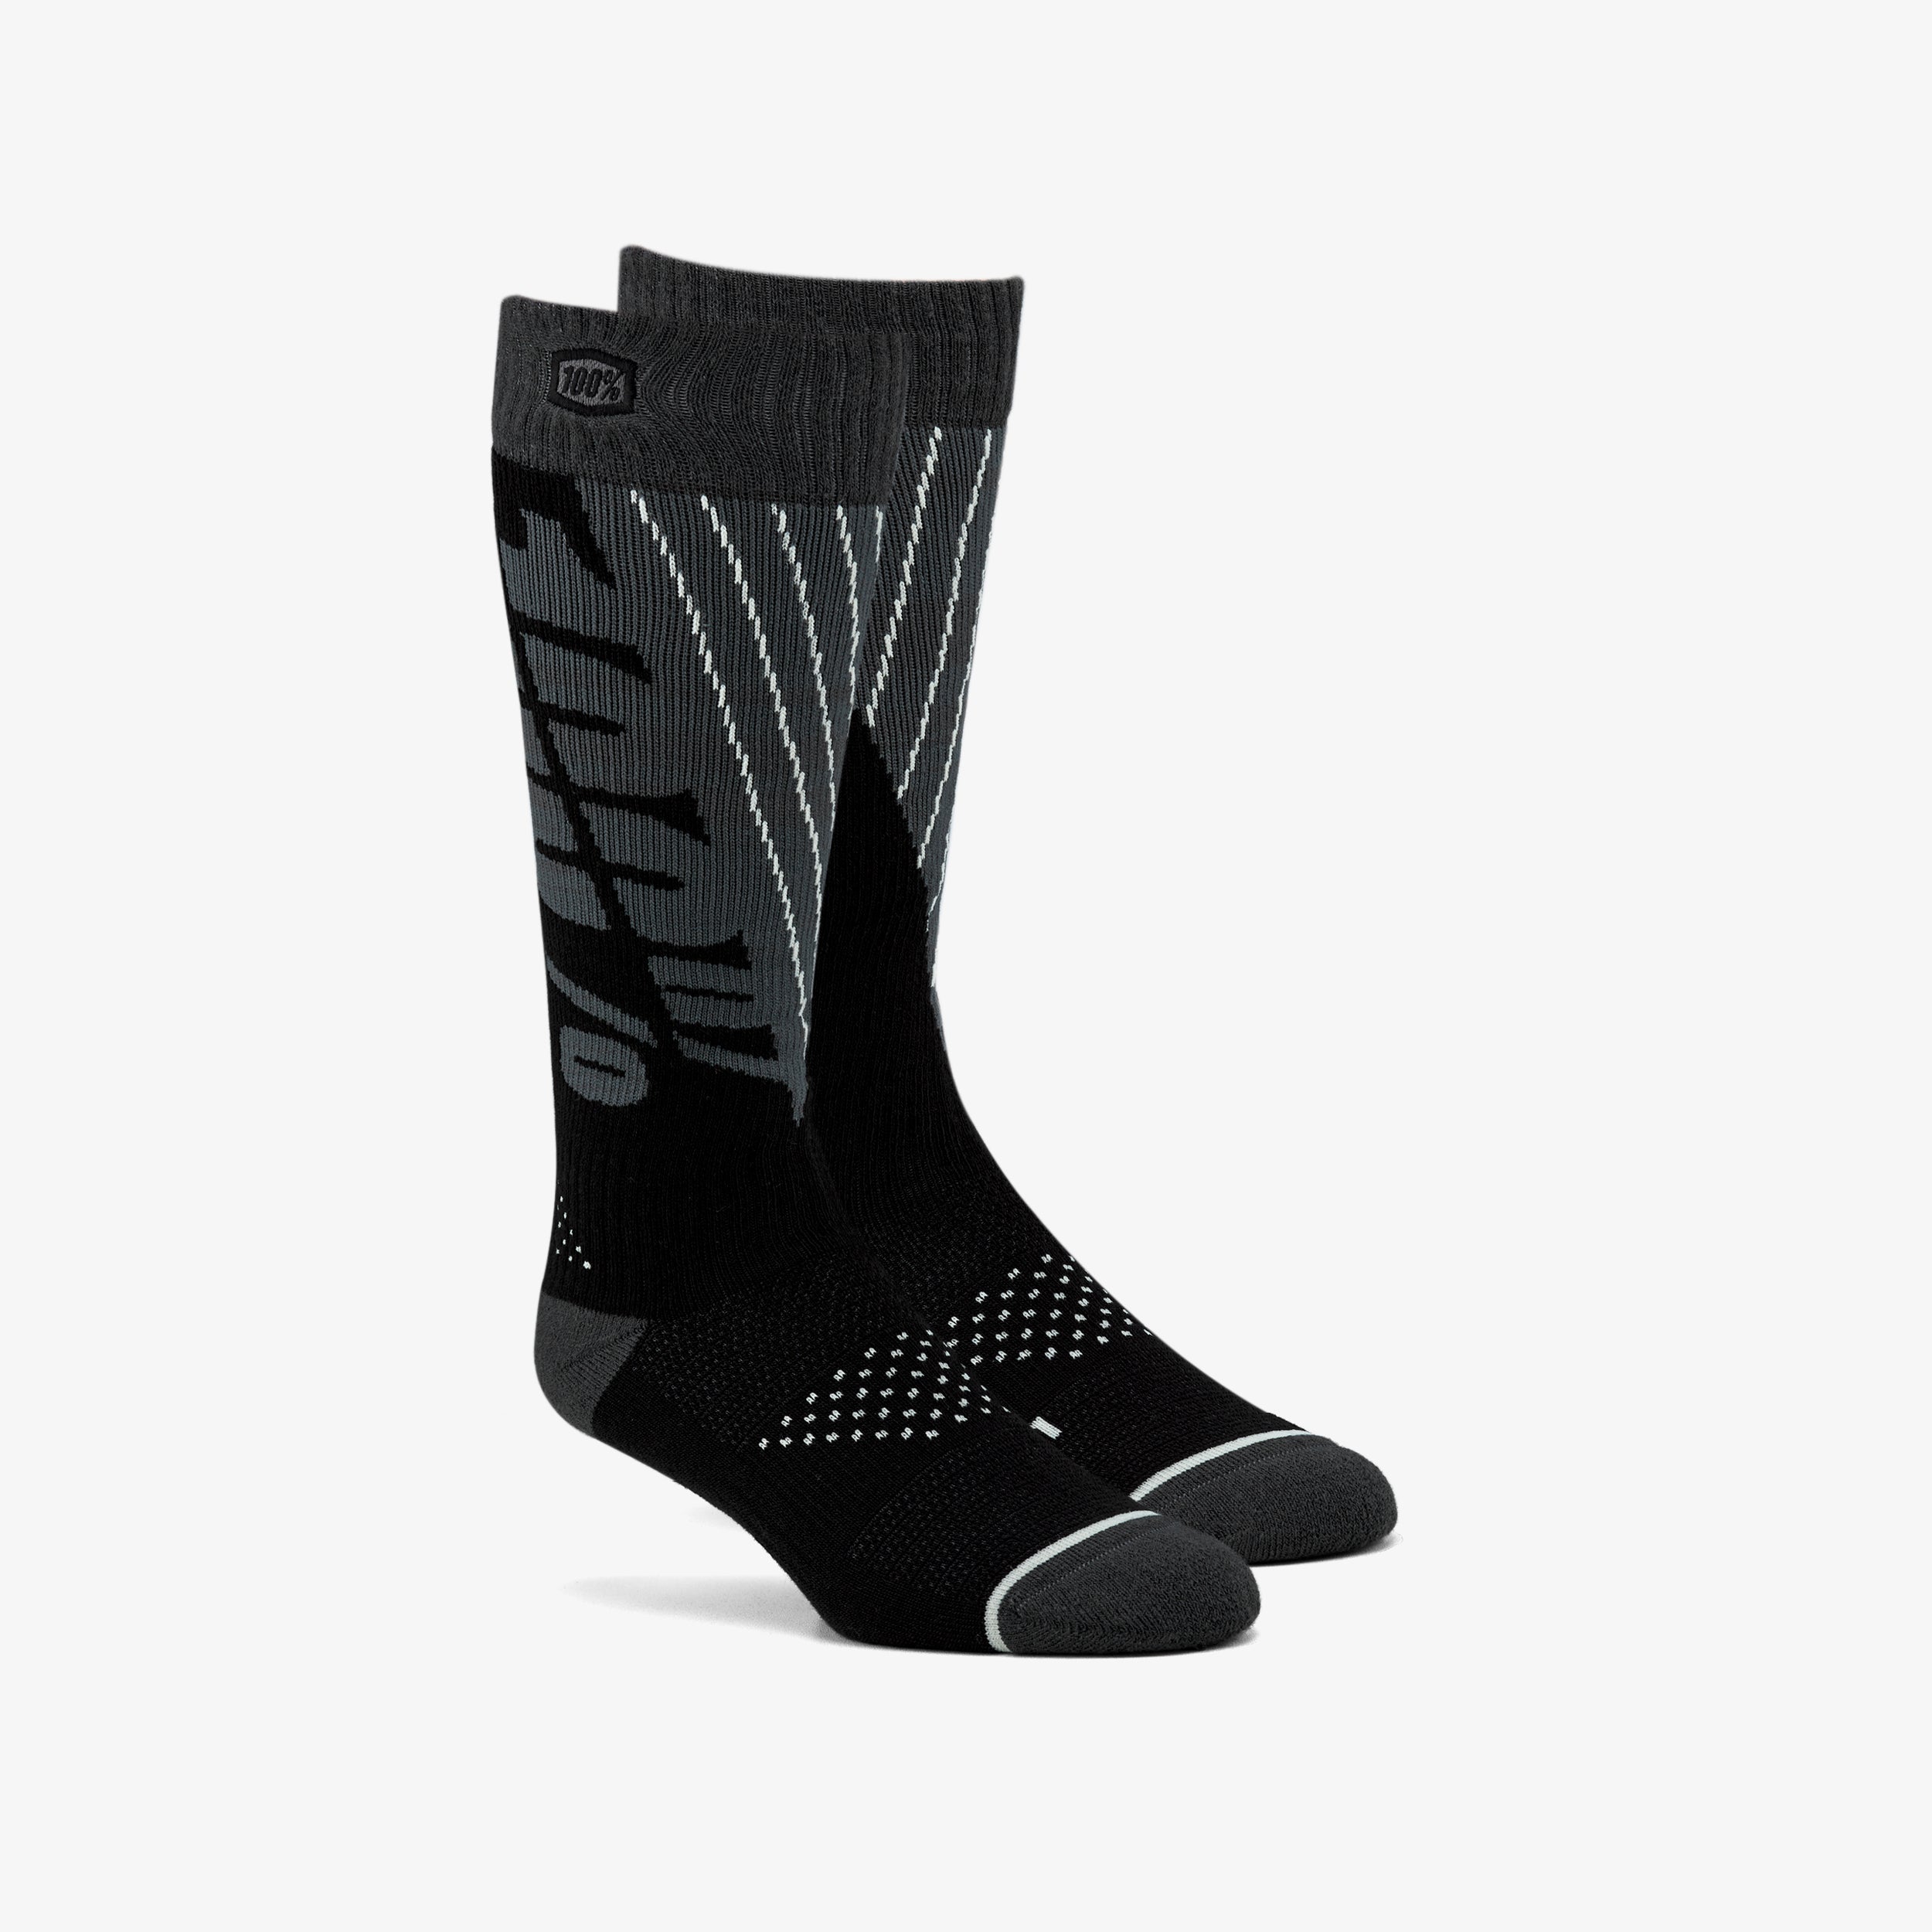 TORQUE Comfort Moto Socks Black/Steel Grey